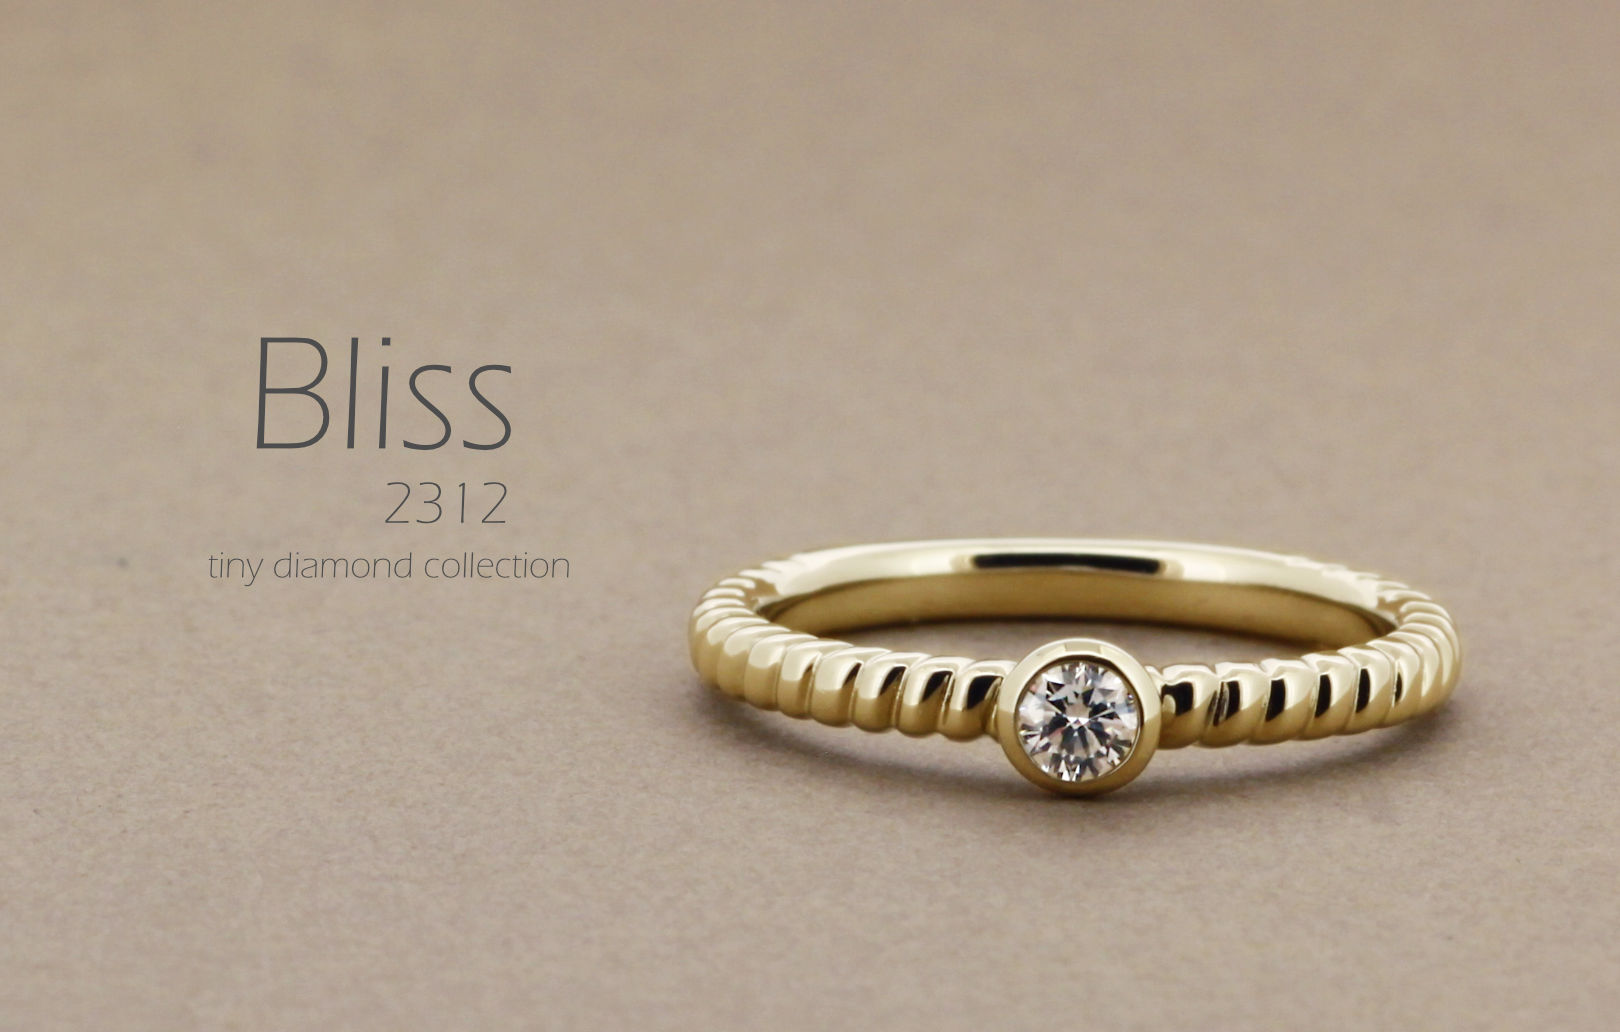 「Bliss」という名前が付いた、大きめの縄目のようなデザインアームに0.1ctのダイヤモンドをフクリンで指輪の詳細ページトップ